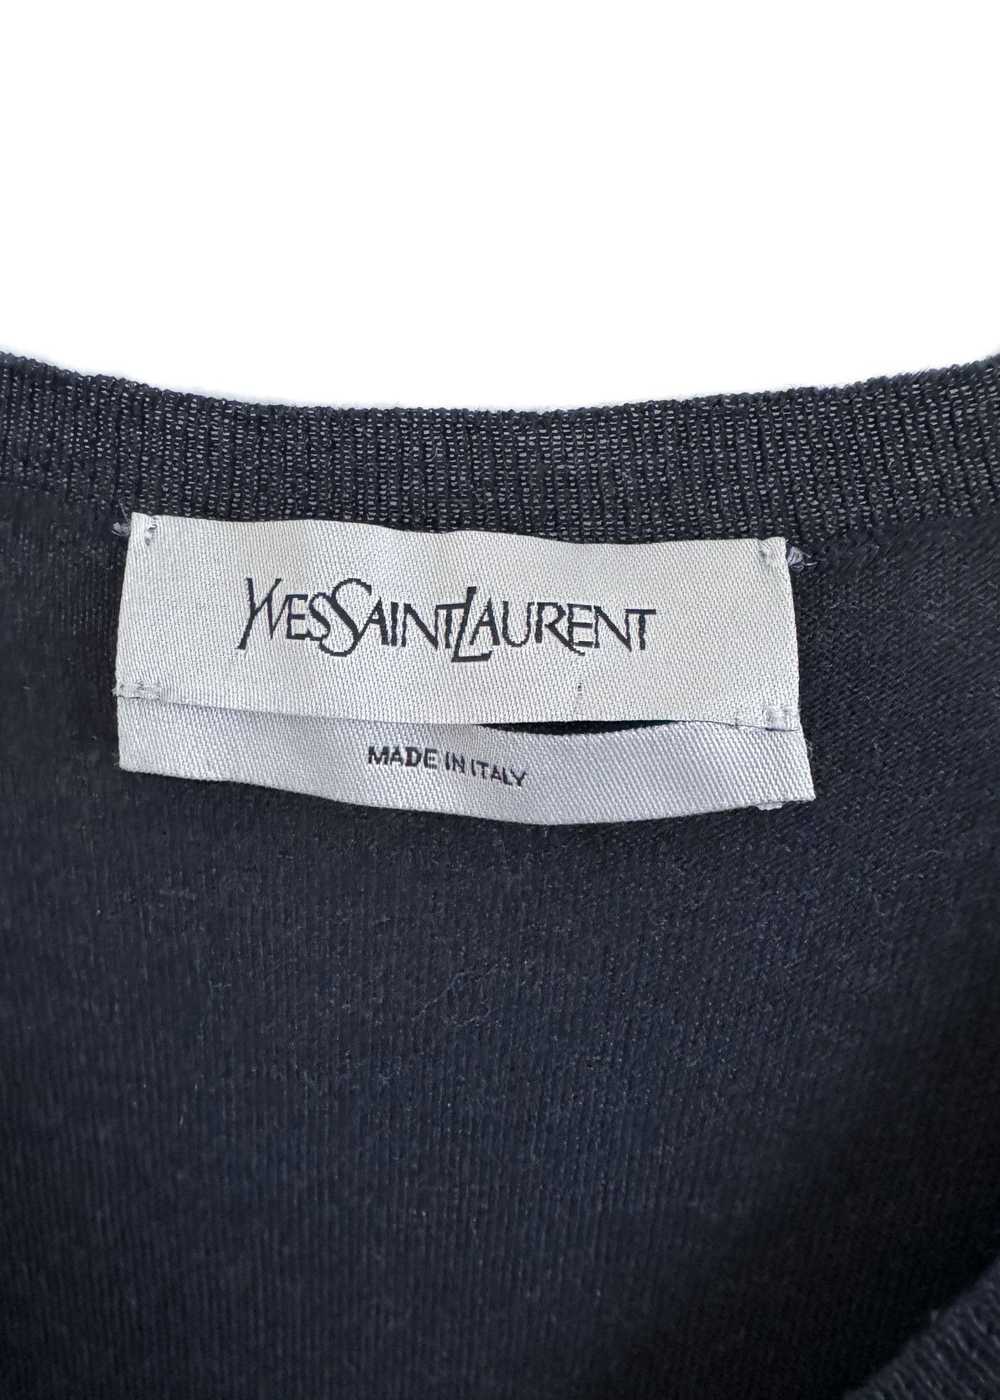 Yves Saint Laurent Yves Saint Laurent Navy Wool V… - image 7